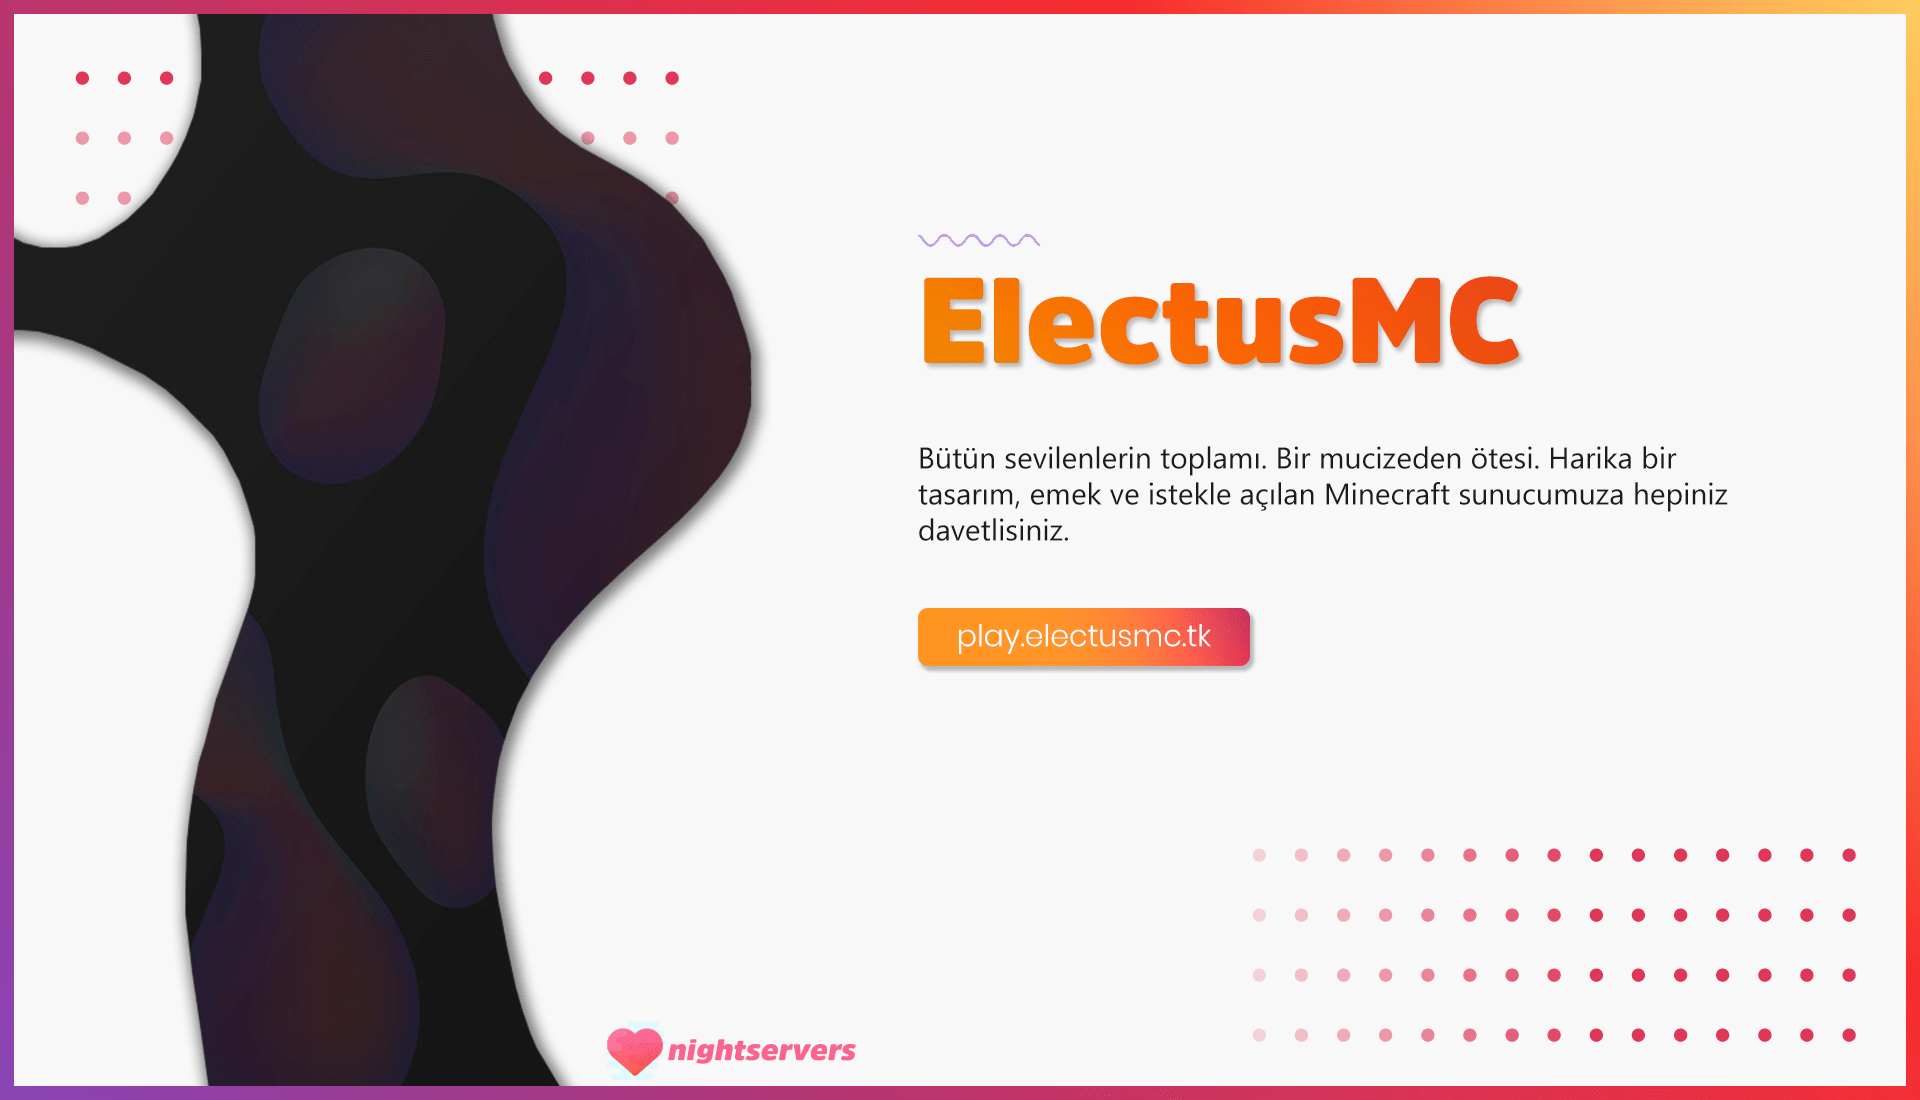 ElectusMC1-min.png